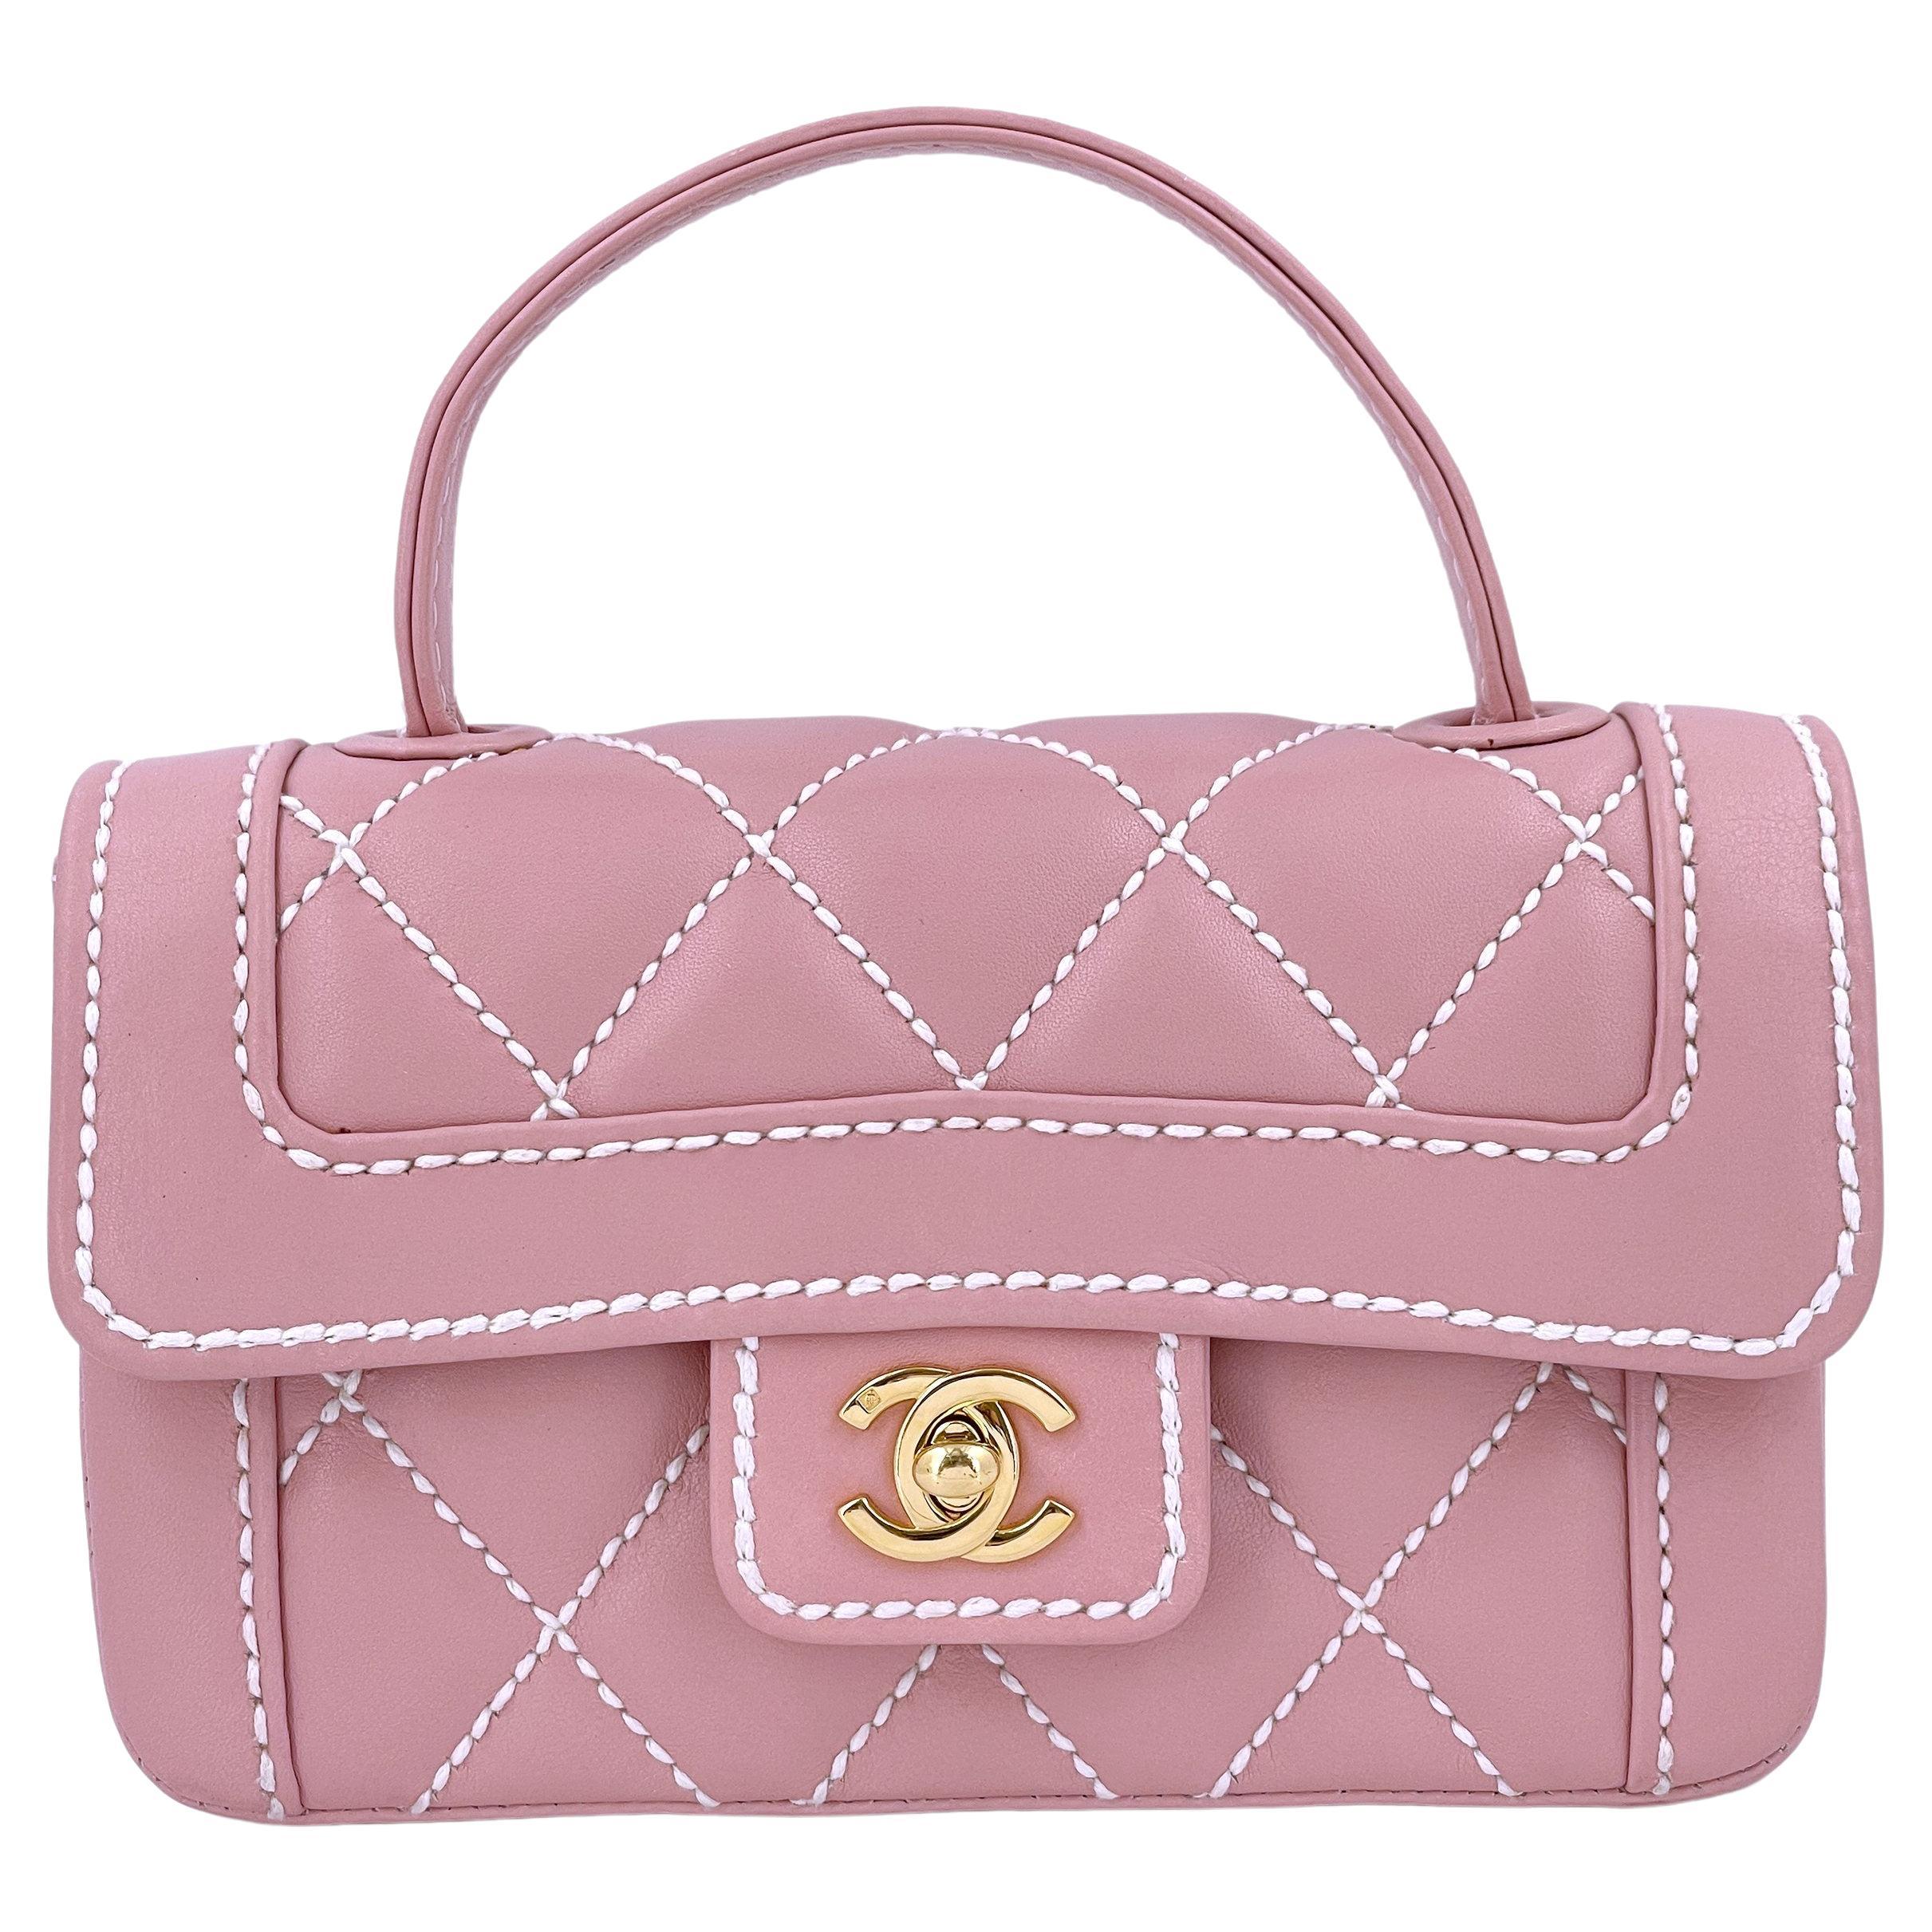 Rare Chanel Mauve Pink Wild Stitch Surpique Baby Flap Bag 66463 For Sale